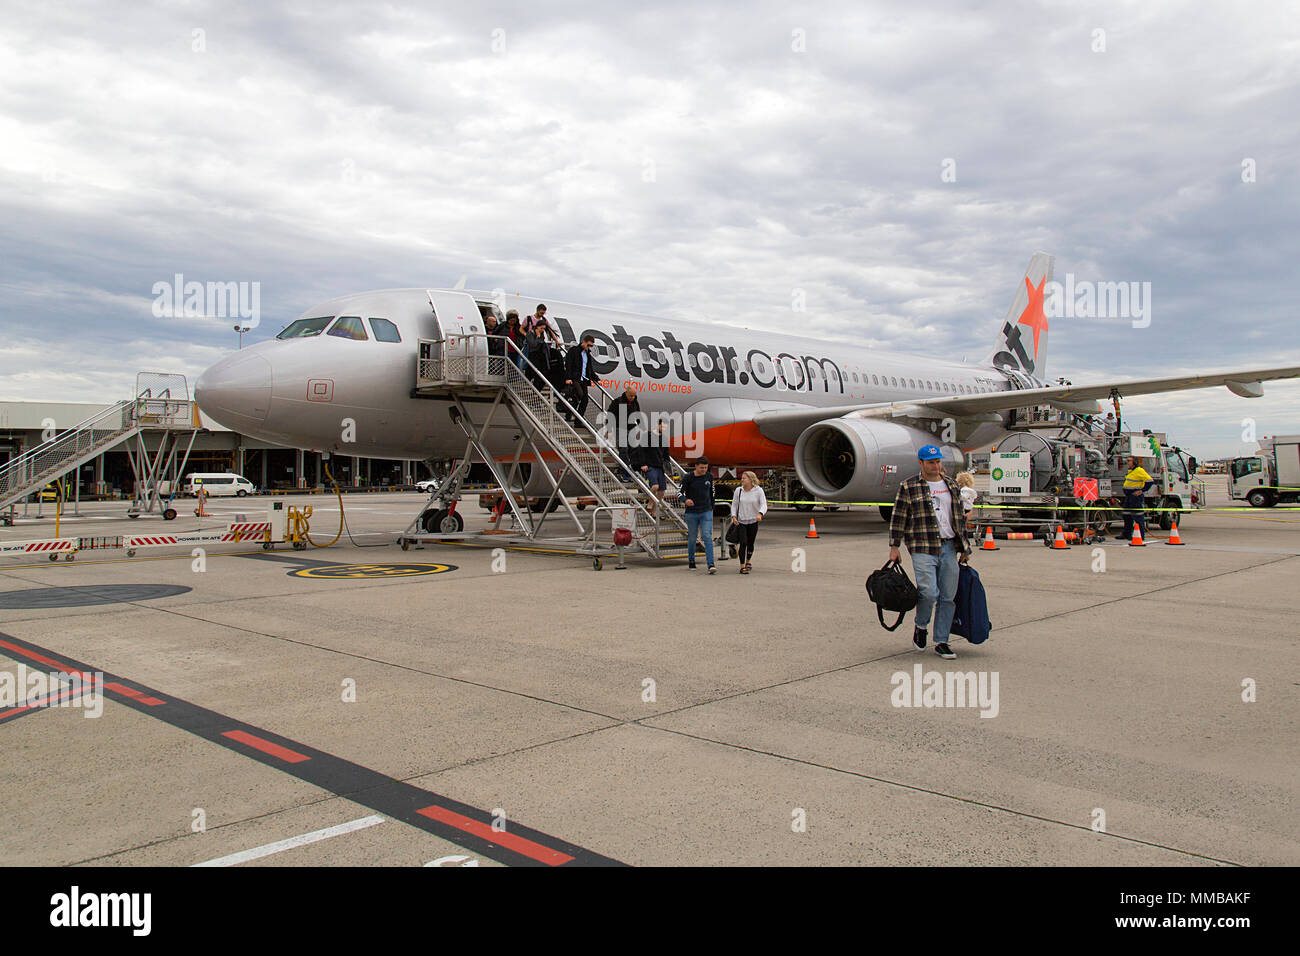 Melbourne, Australie : Avril 01, 2018 : Les passagers débarquent un vol Jetstar à l'aéroport de Tullamarine. Jetstar est une compagnie aérienne à bas prix. Banque D'Images